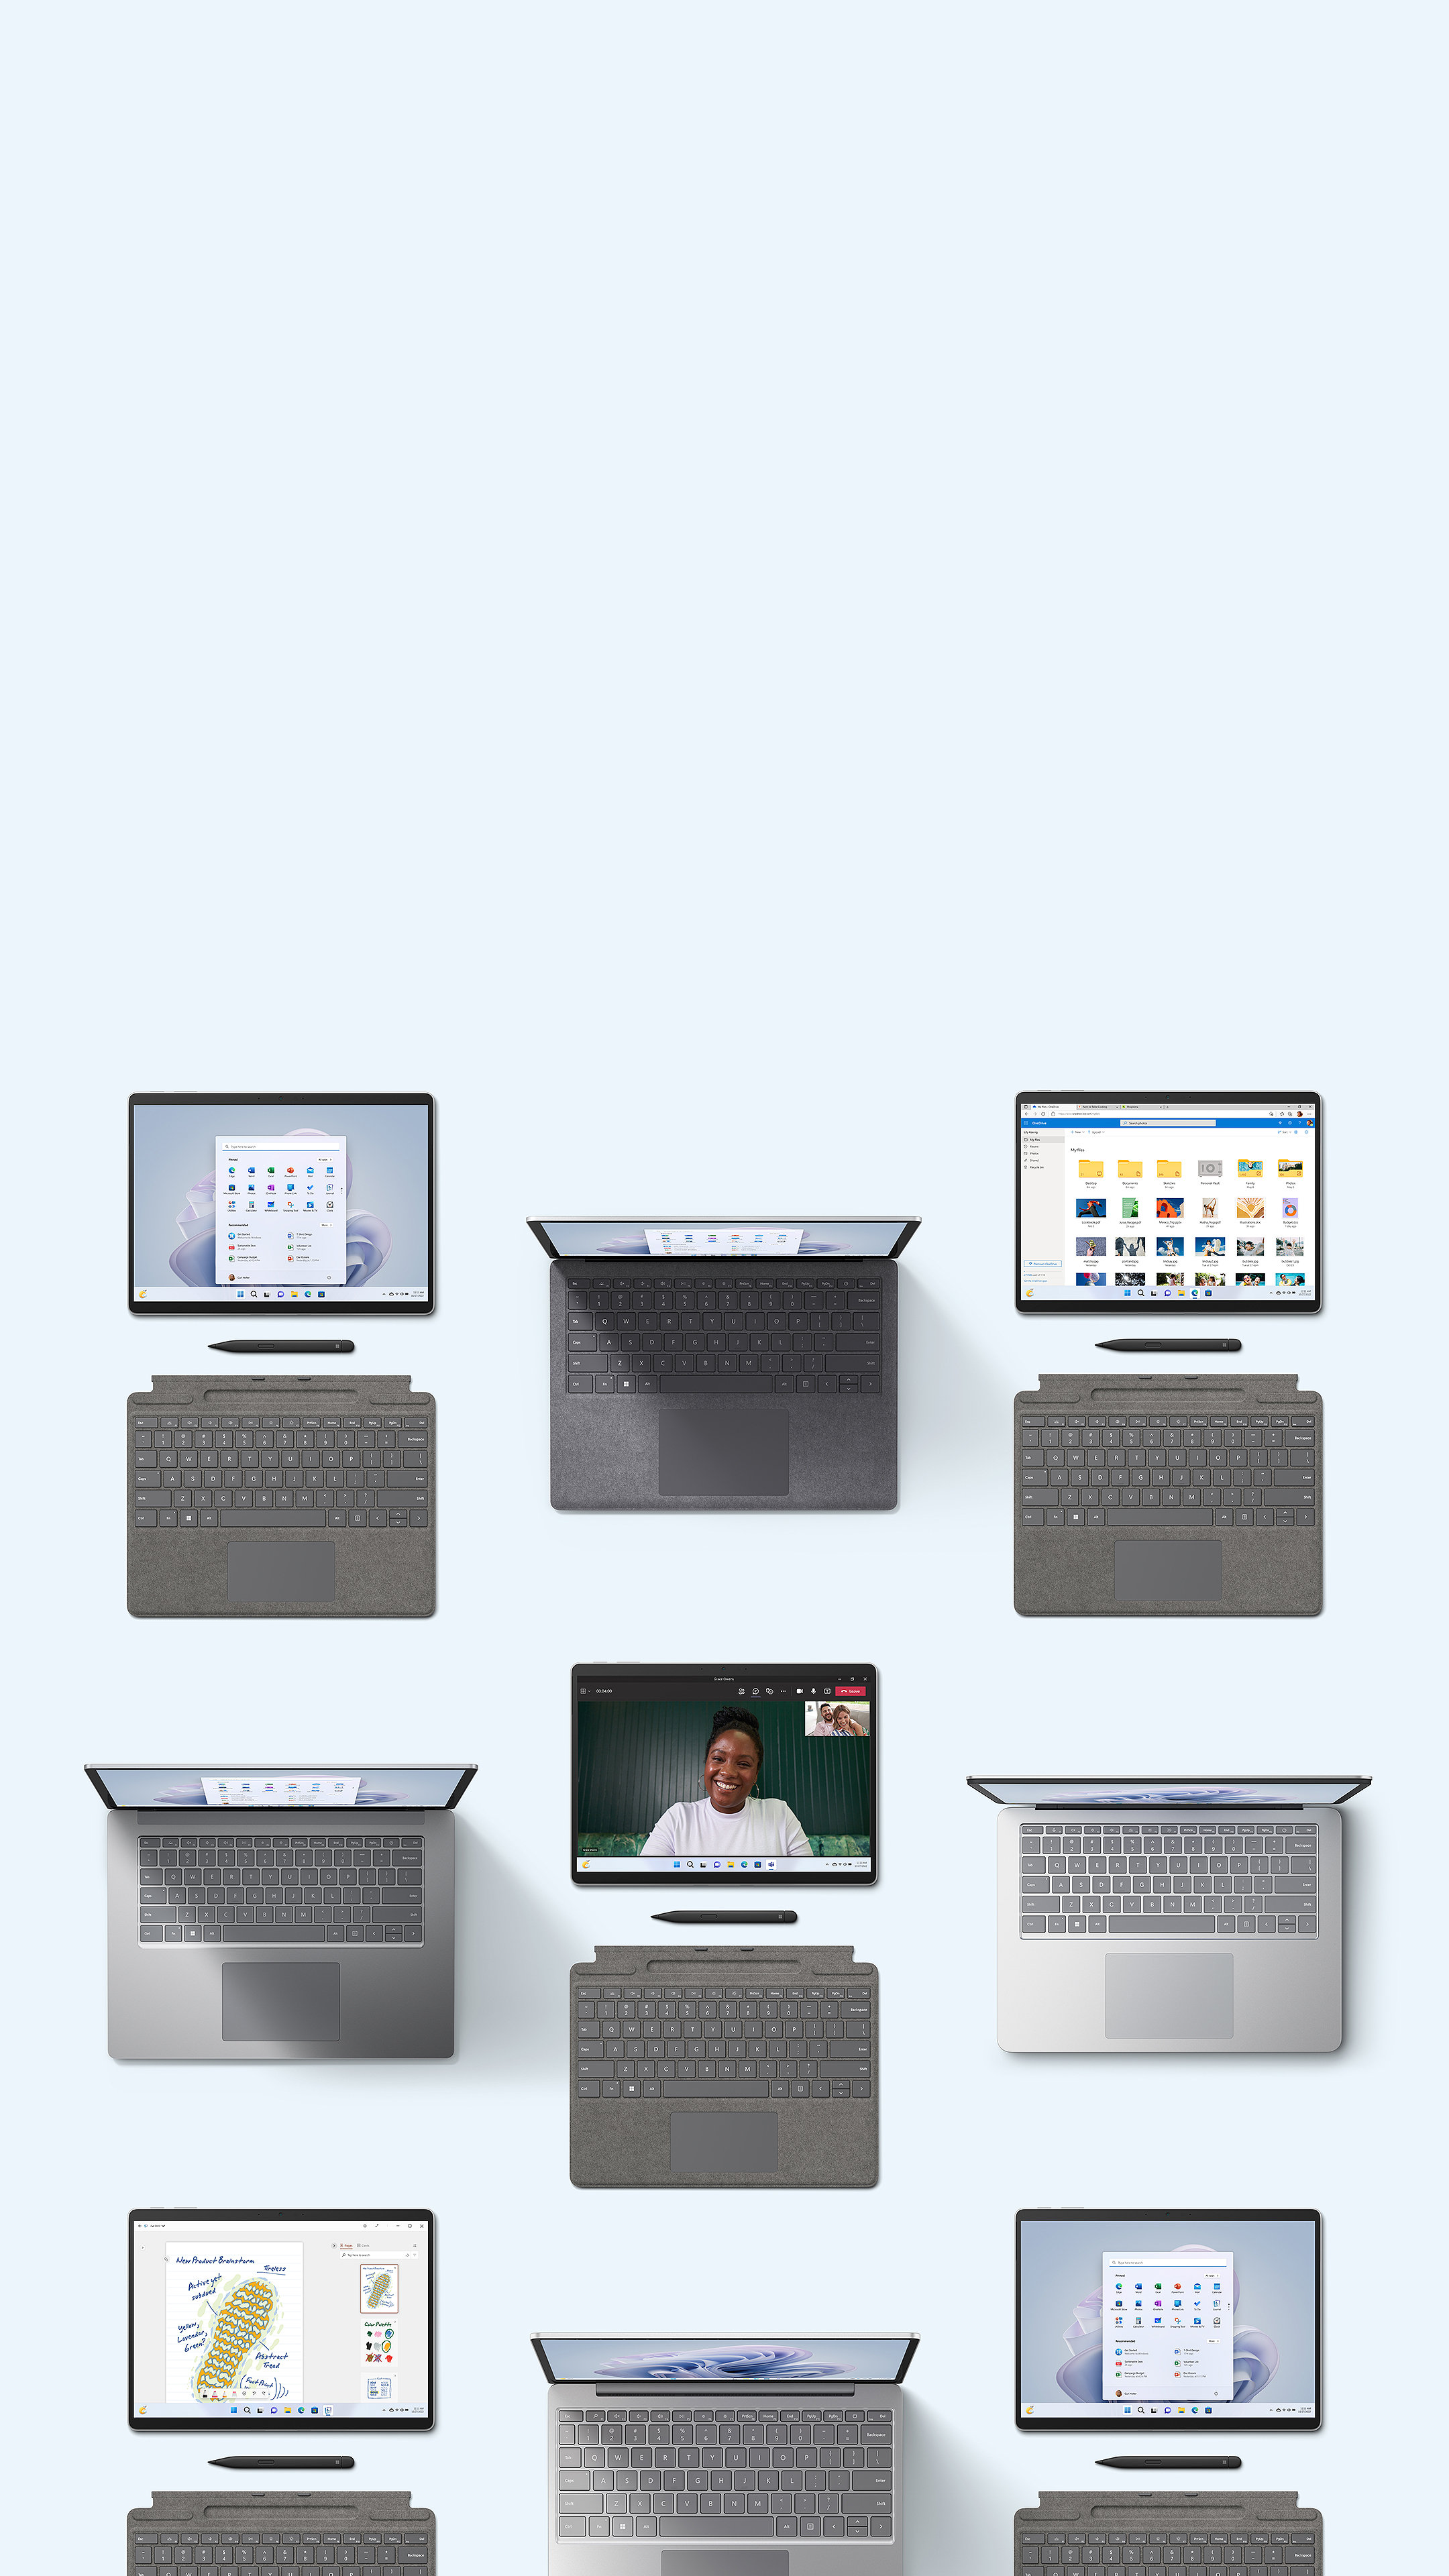 Uma coleção de dispositivos da família Surface